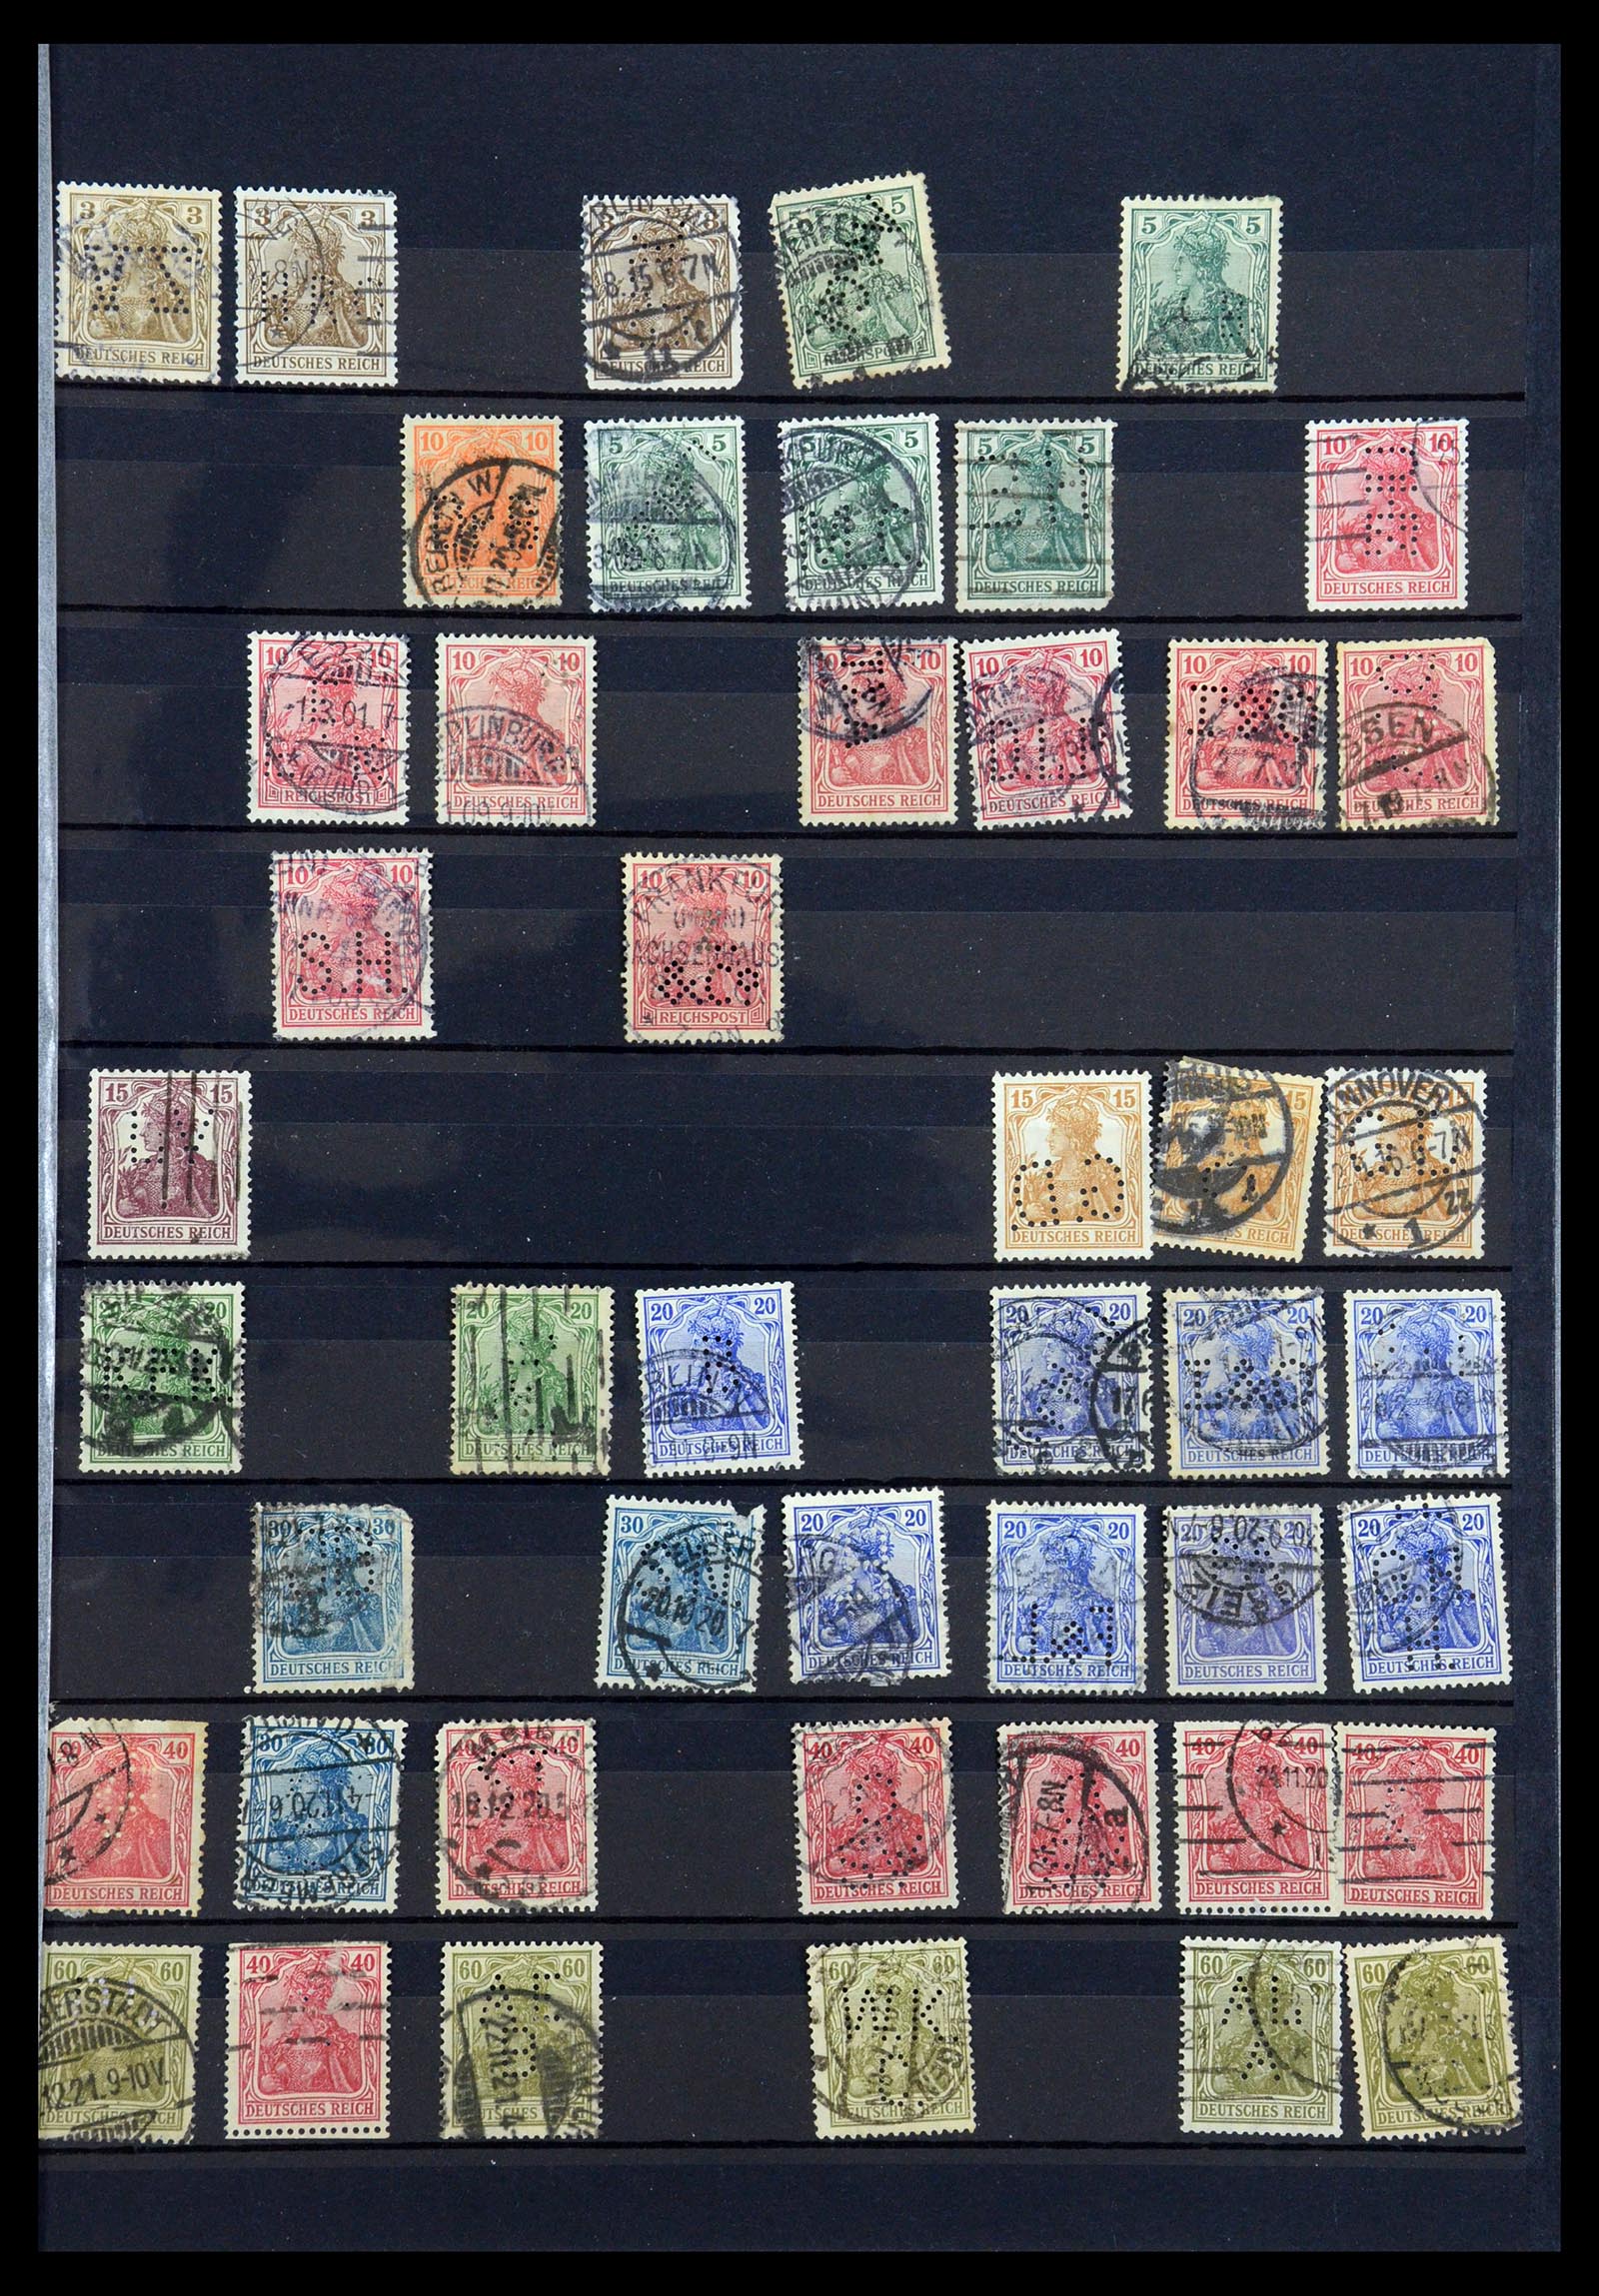 35183 023 - Stamp Collection 35183 German Reich perfins 1880-1945.